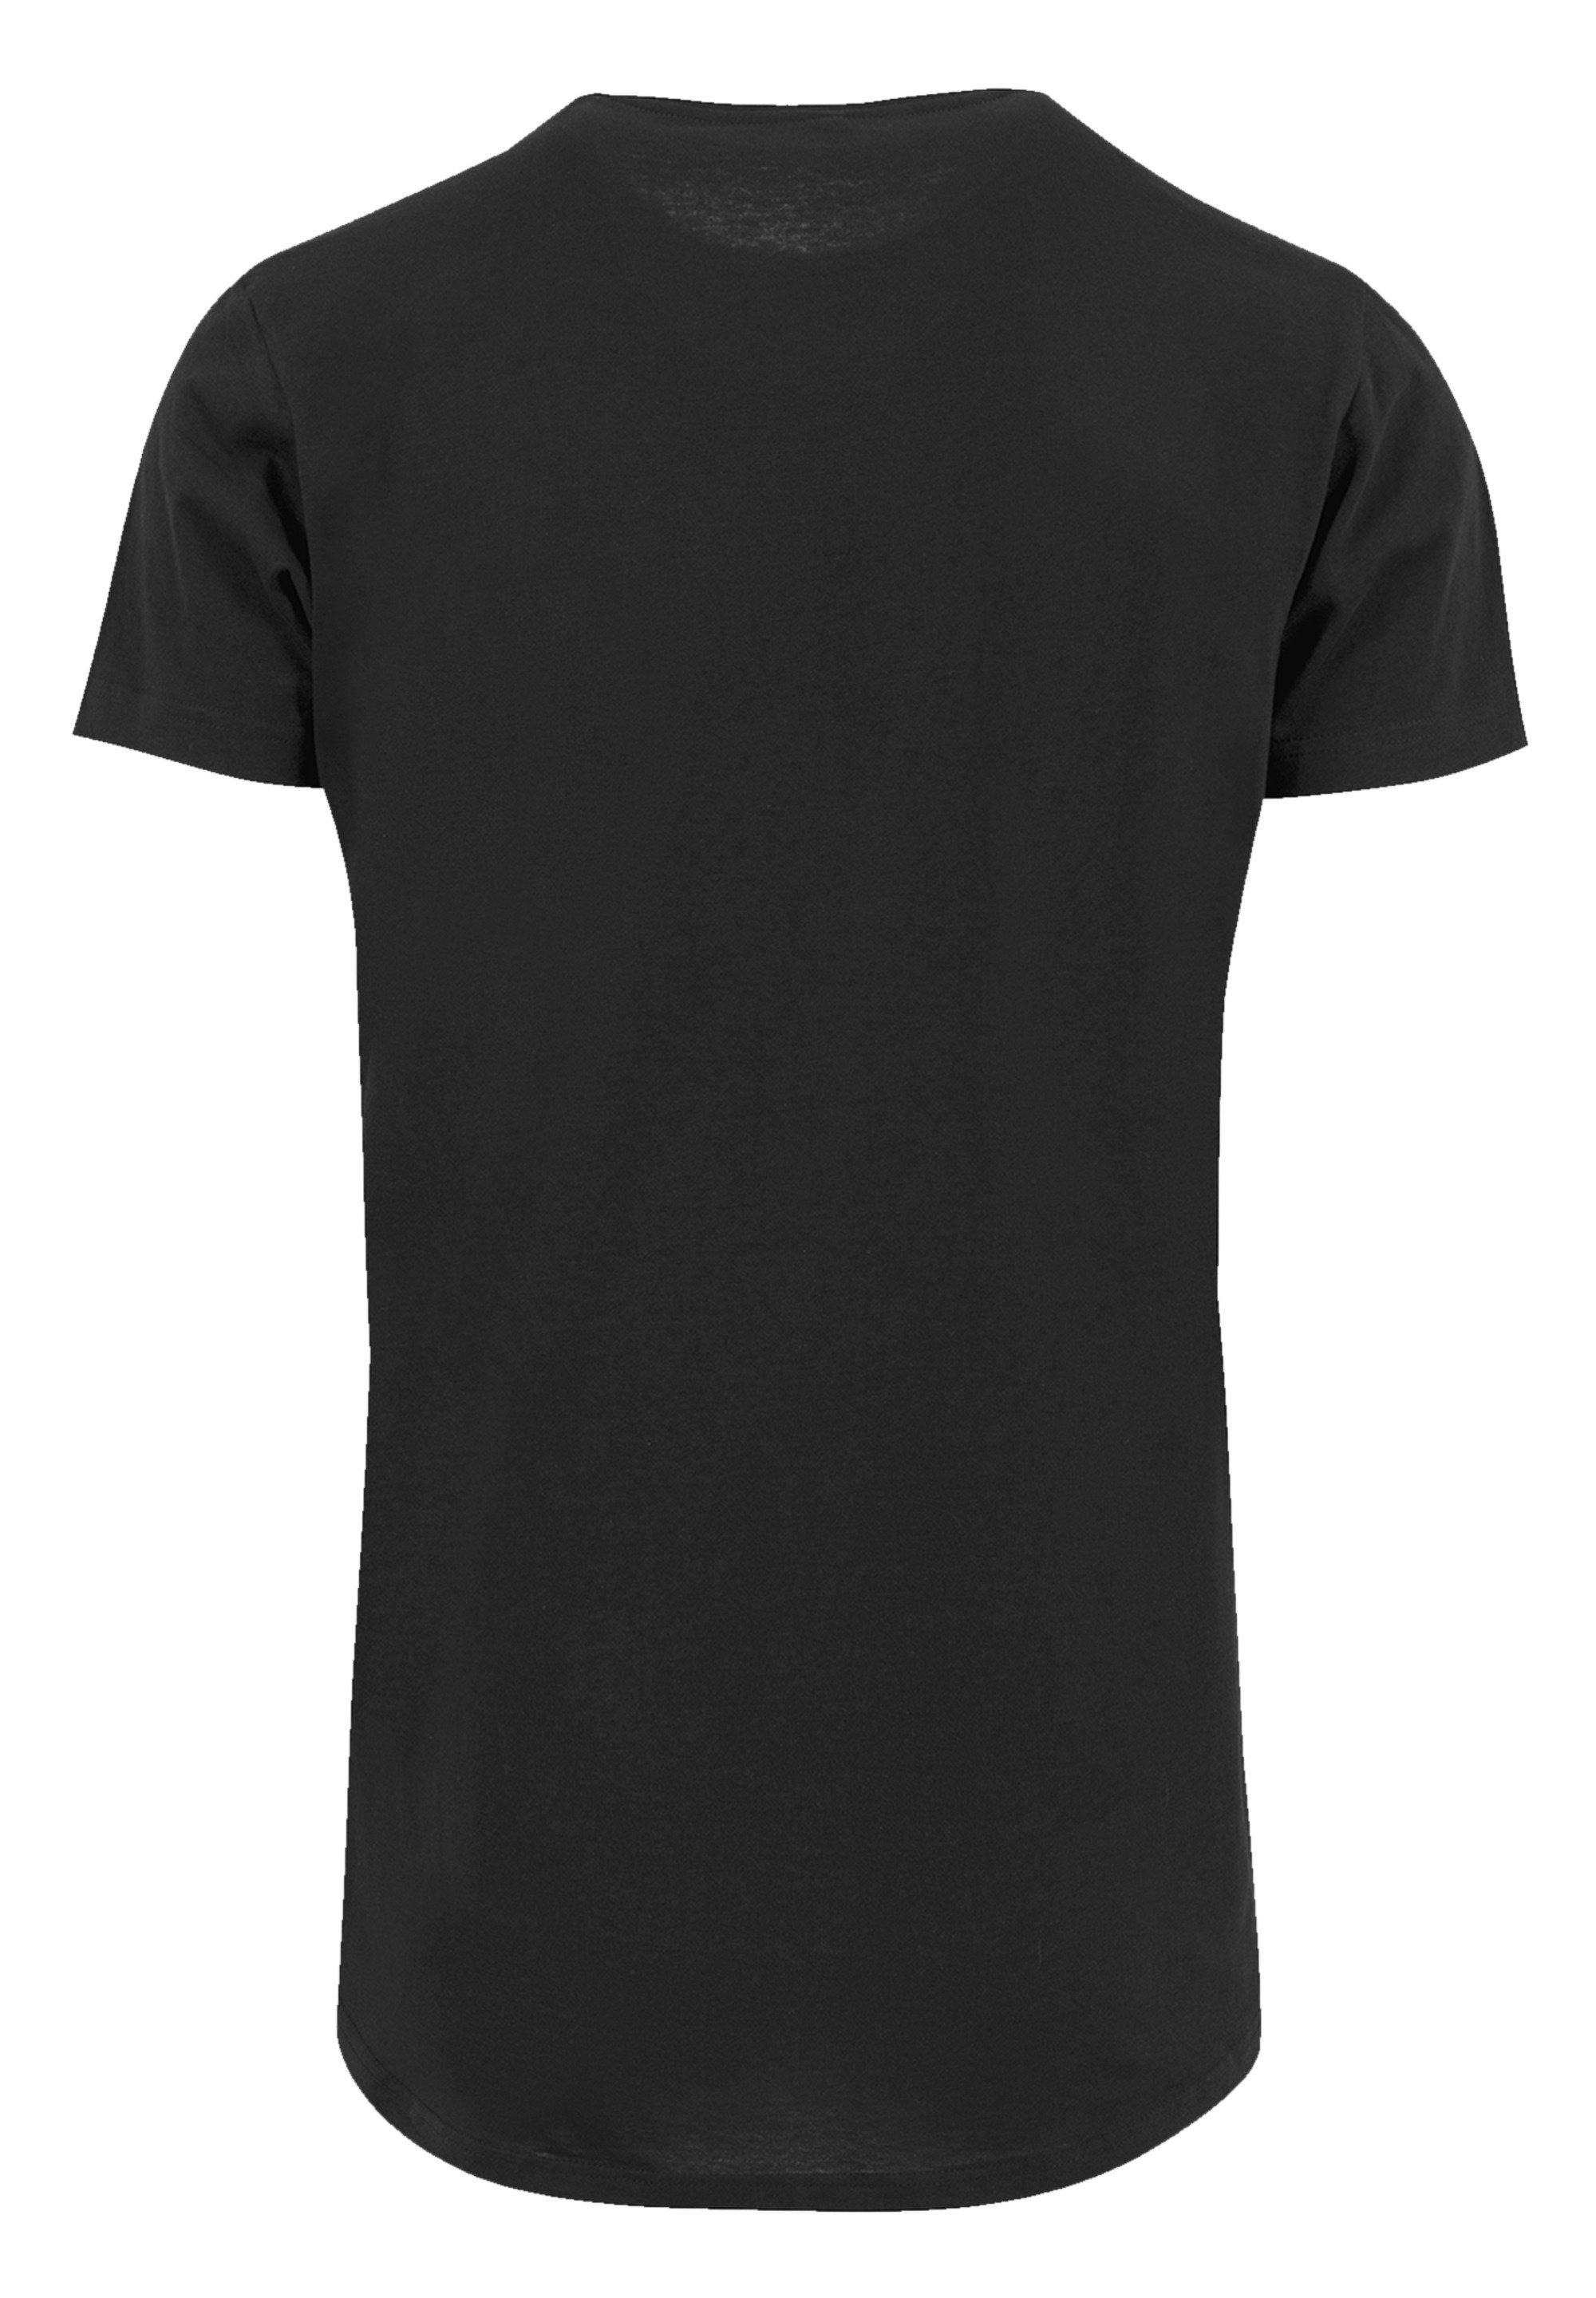 Kiss Band Qualität, F4NT4STIC Demon mit Tragekomfort hohem Rock T-Shirt Sehr Hard weicher Baumwollstoff Premium